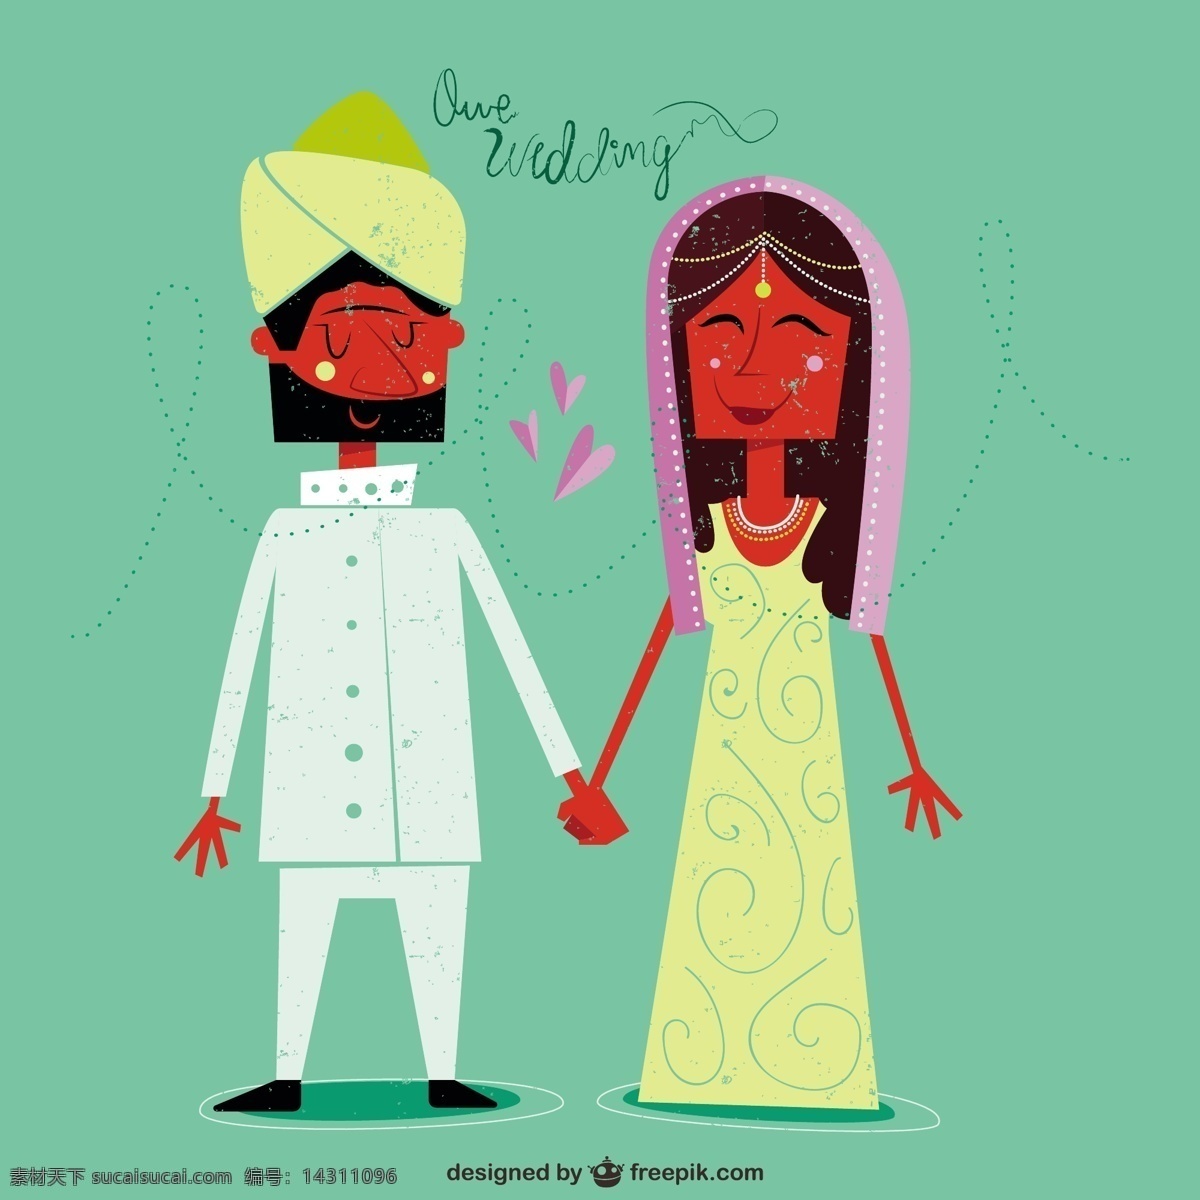 我们的婚礼 婚礼 爱 印度 庆祝 新娘 情侣 插图 浪漫 文化 订婚 传统 新郎 爱的情侣 仪式 我们 绿色